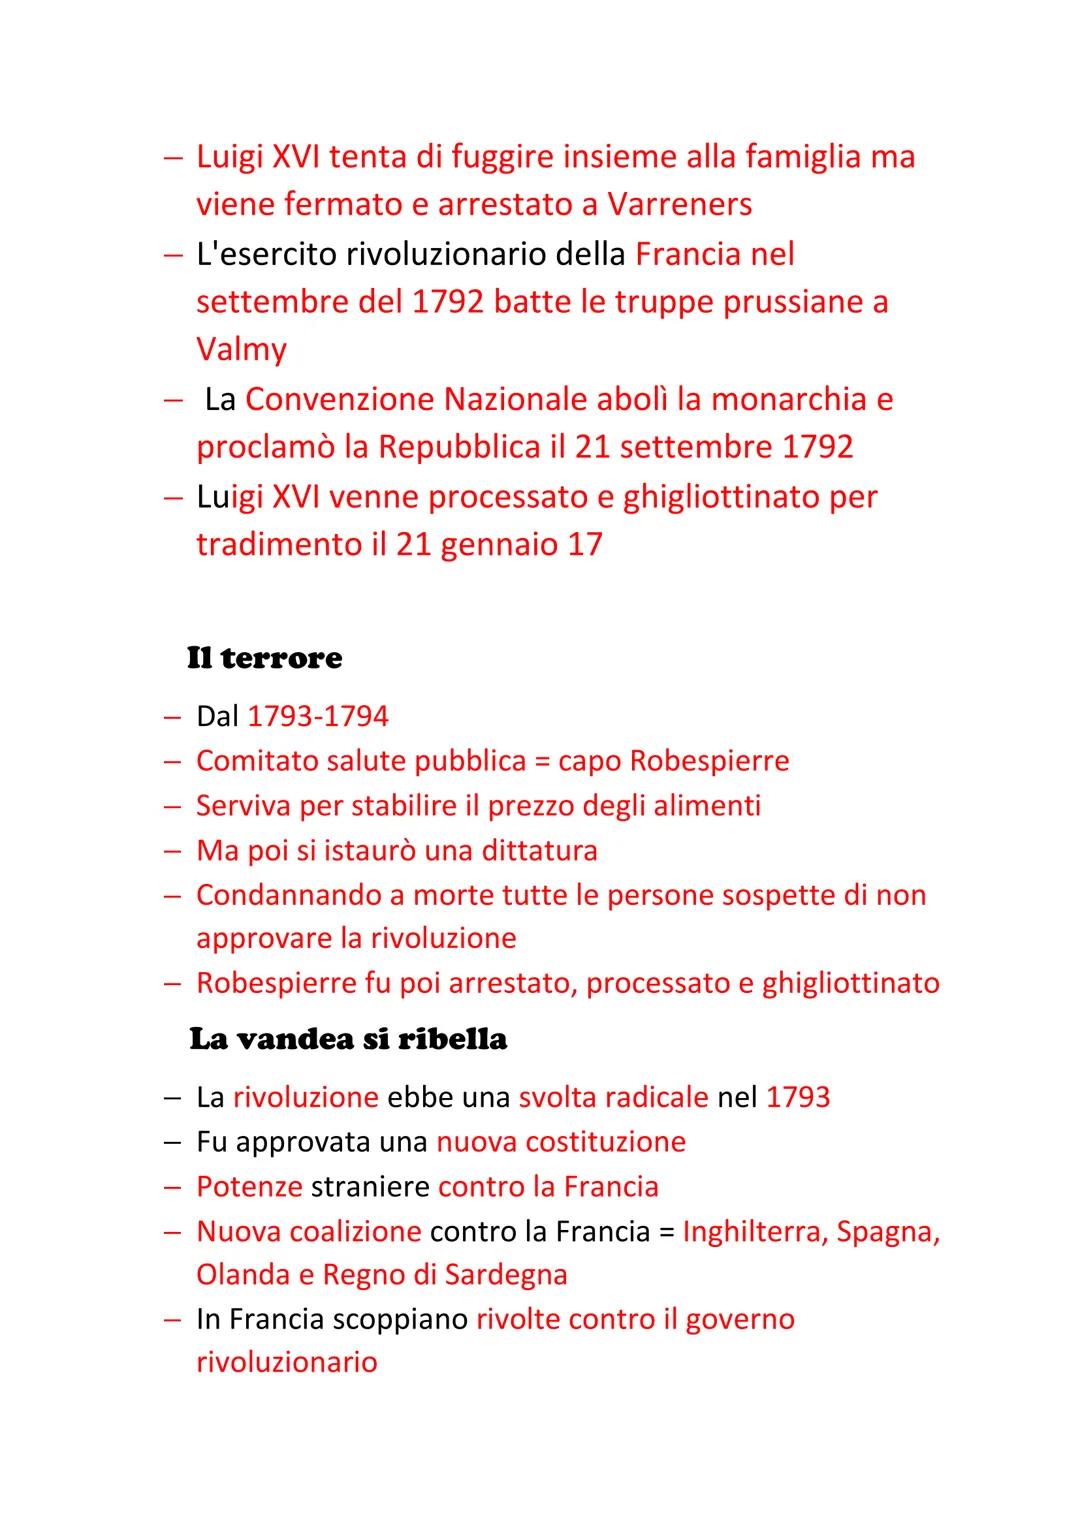 Rivoluzione francese
- Inizia il 14 luglio 1789 con la presa della Bastiglia
- Dopo viene approvata la dichiarazione dei diritti
dell'uomo e